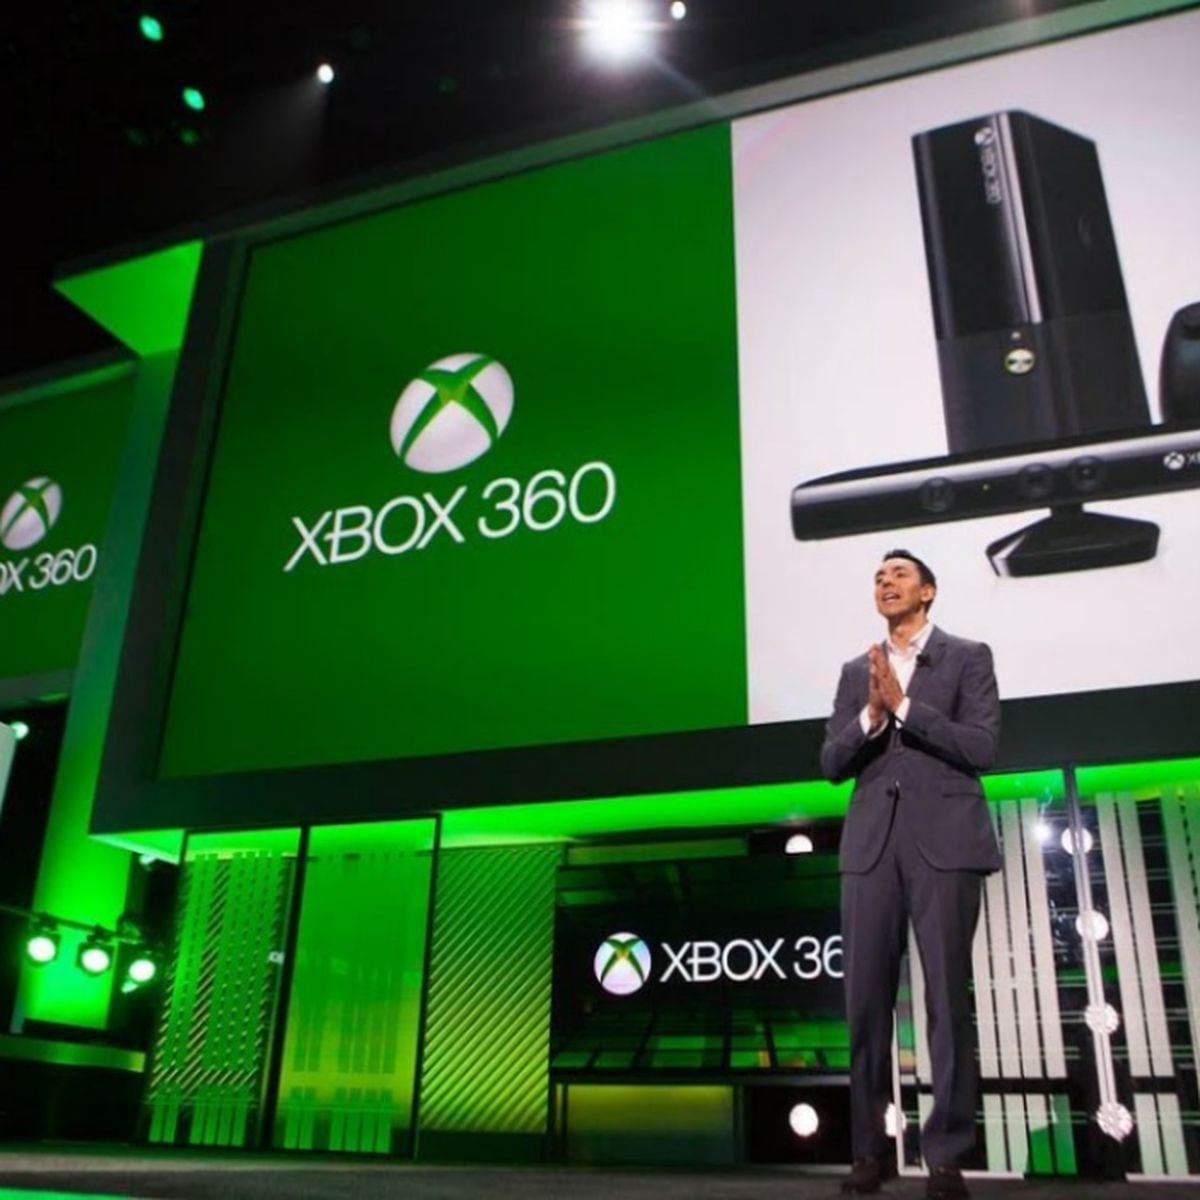 Encerramento da loja da Xbox 360 vai ditar o fim de 220 jogos digitais